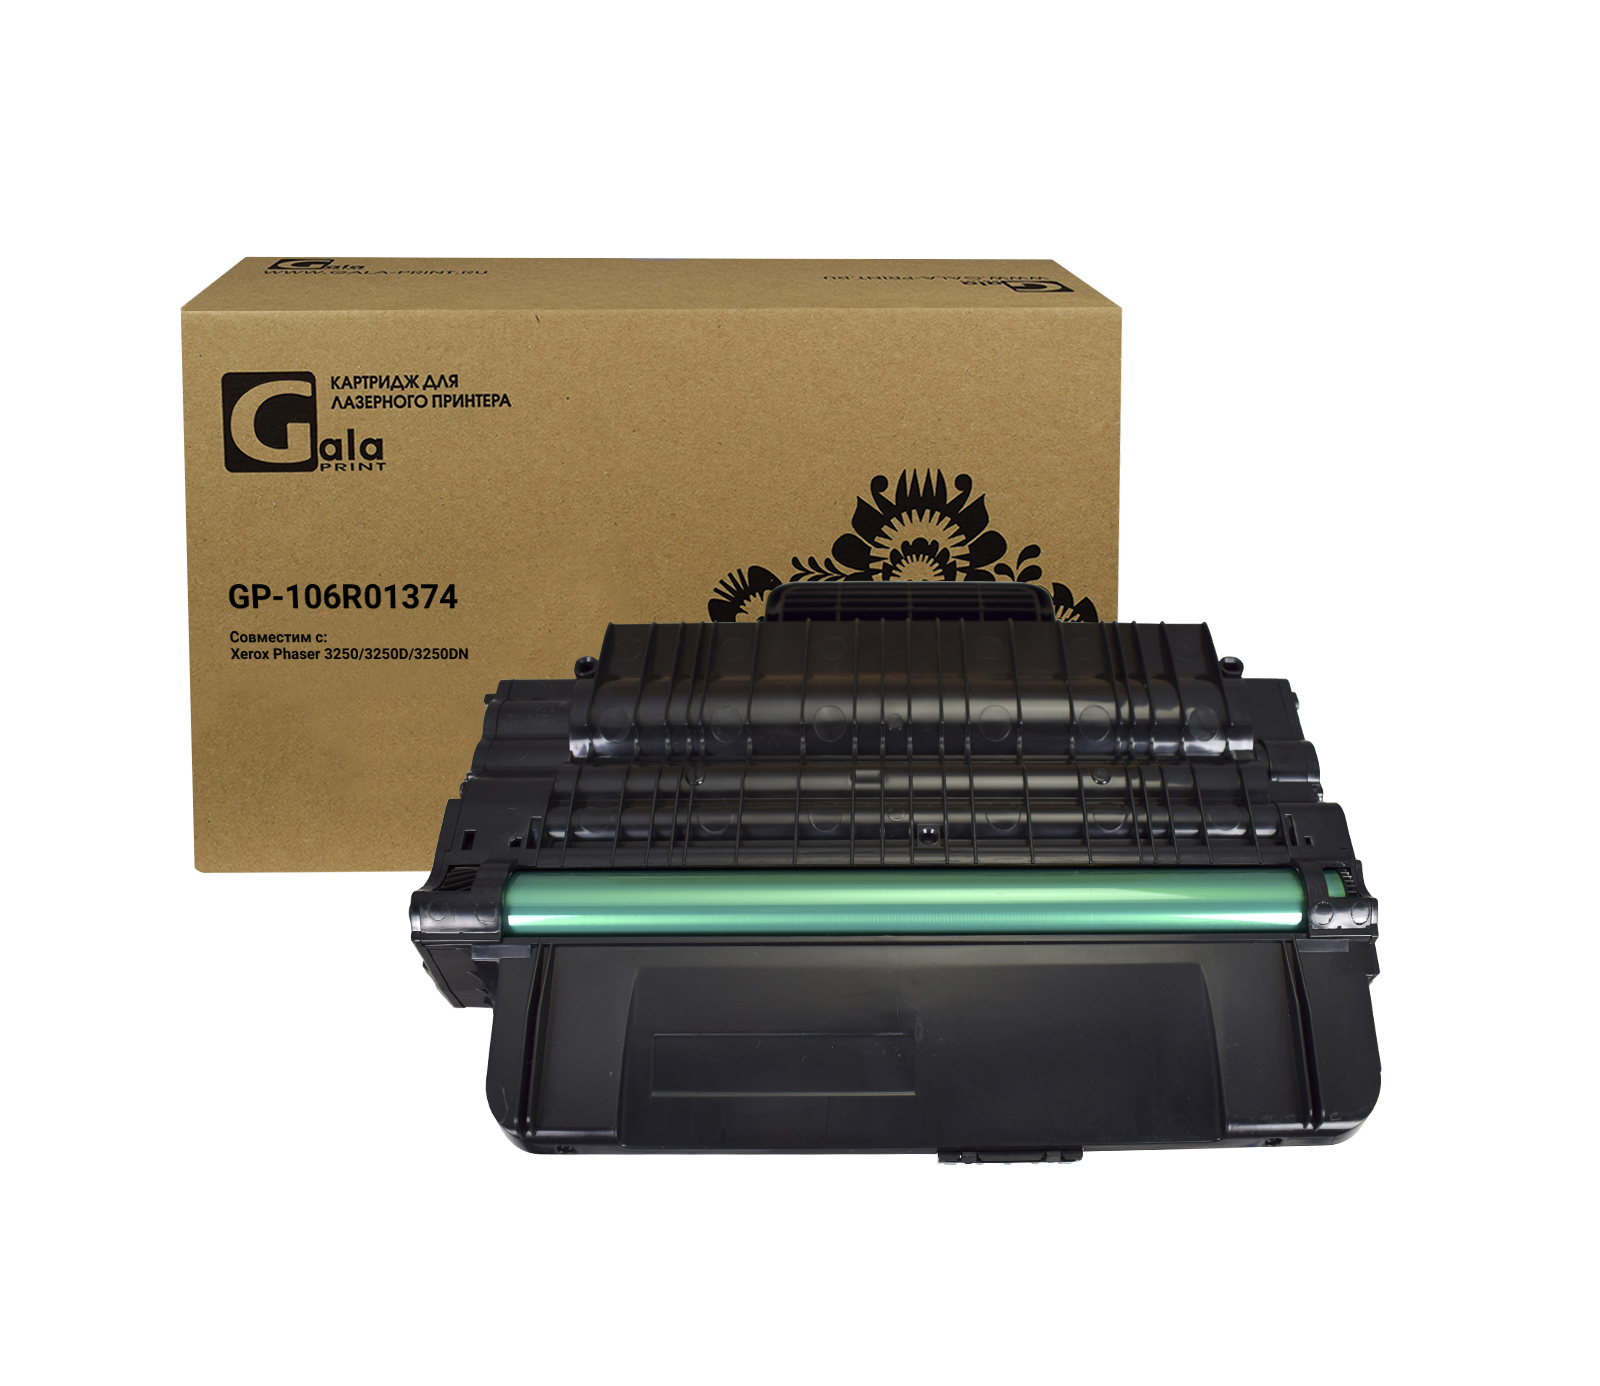 Картридж GP-106R01374 для принтеров Rank Xerox Phaser 3250/3250D/3250DN 5000 копий GalaPrint